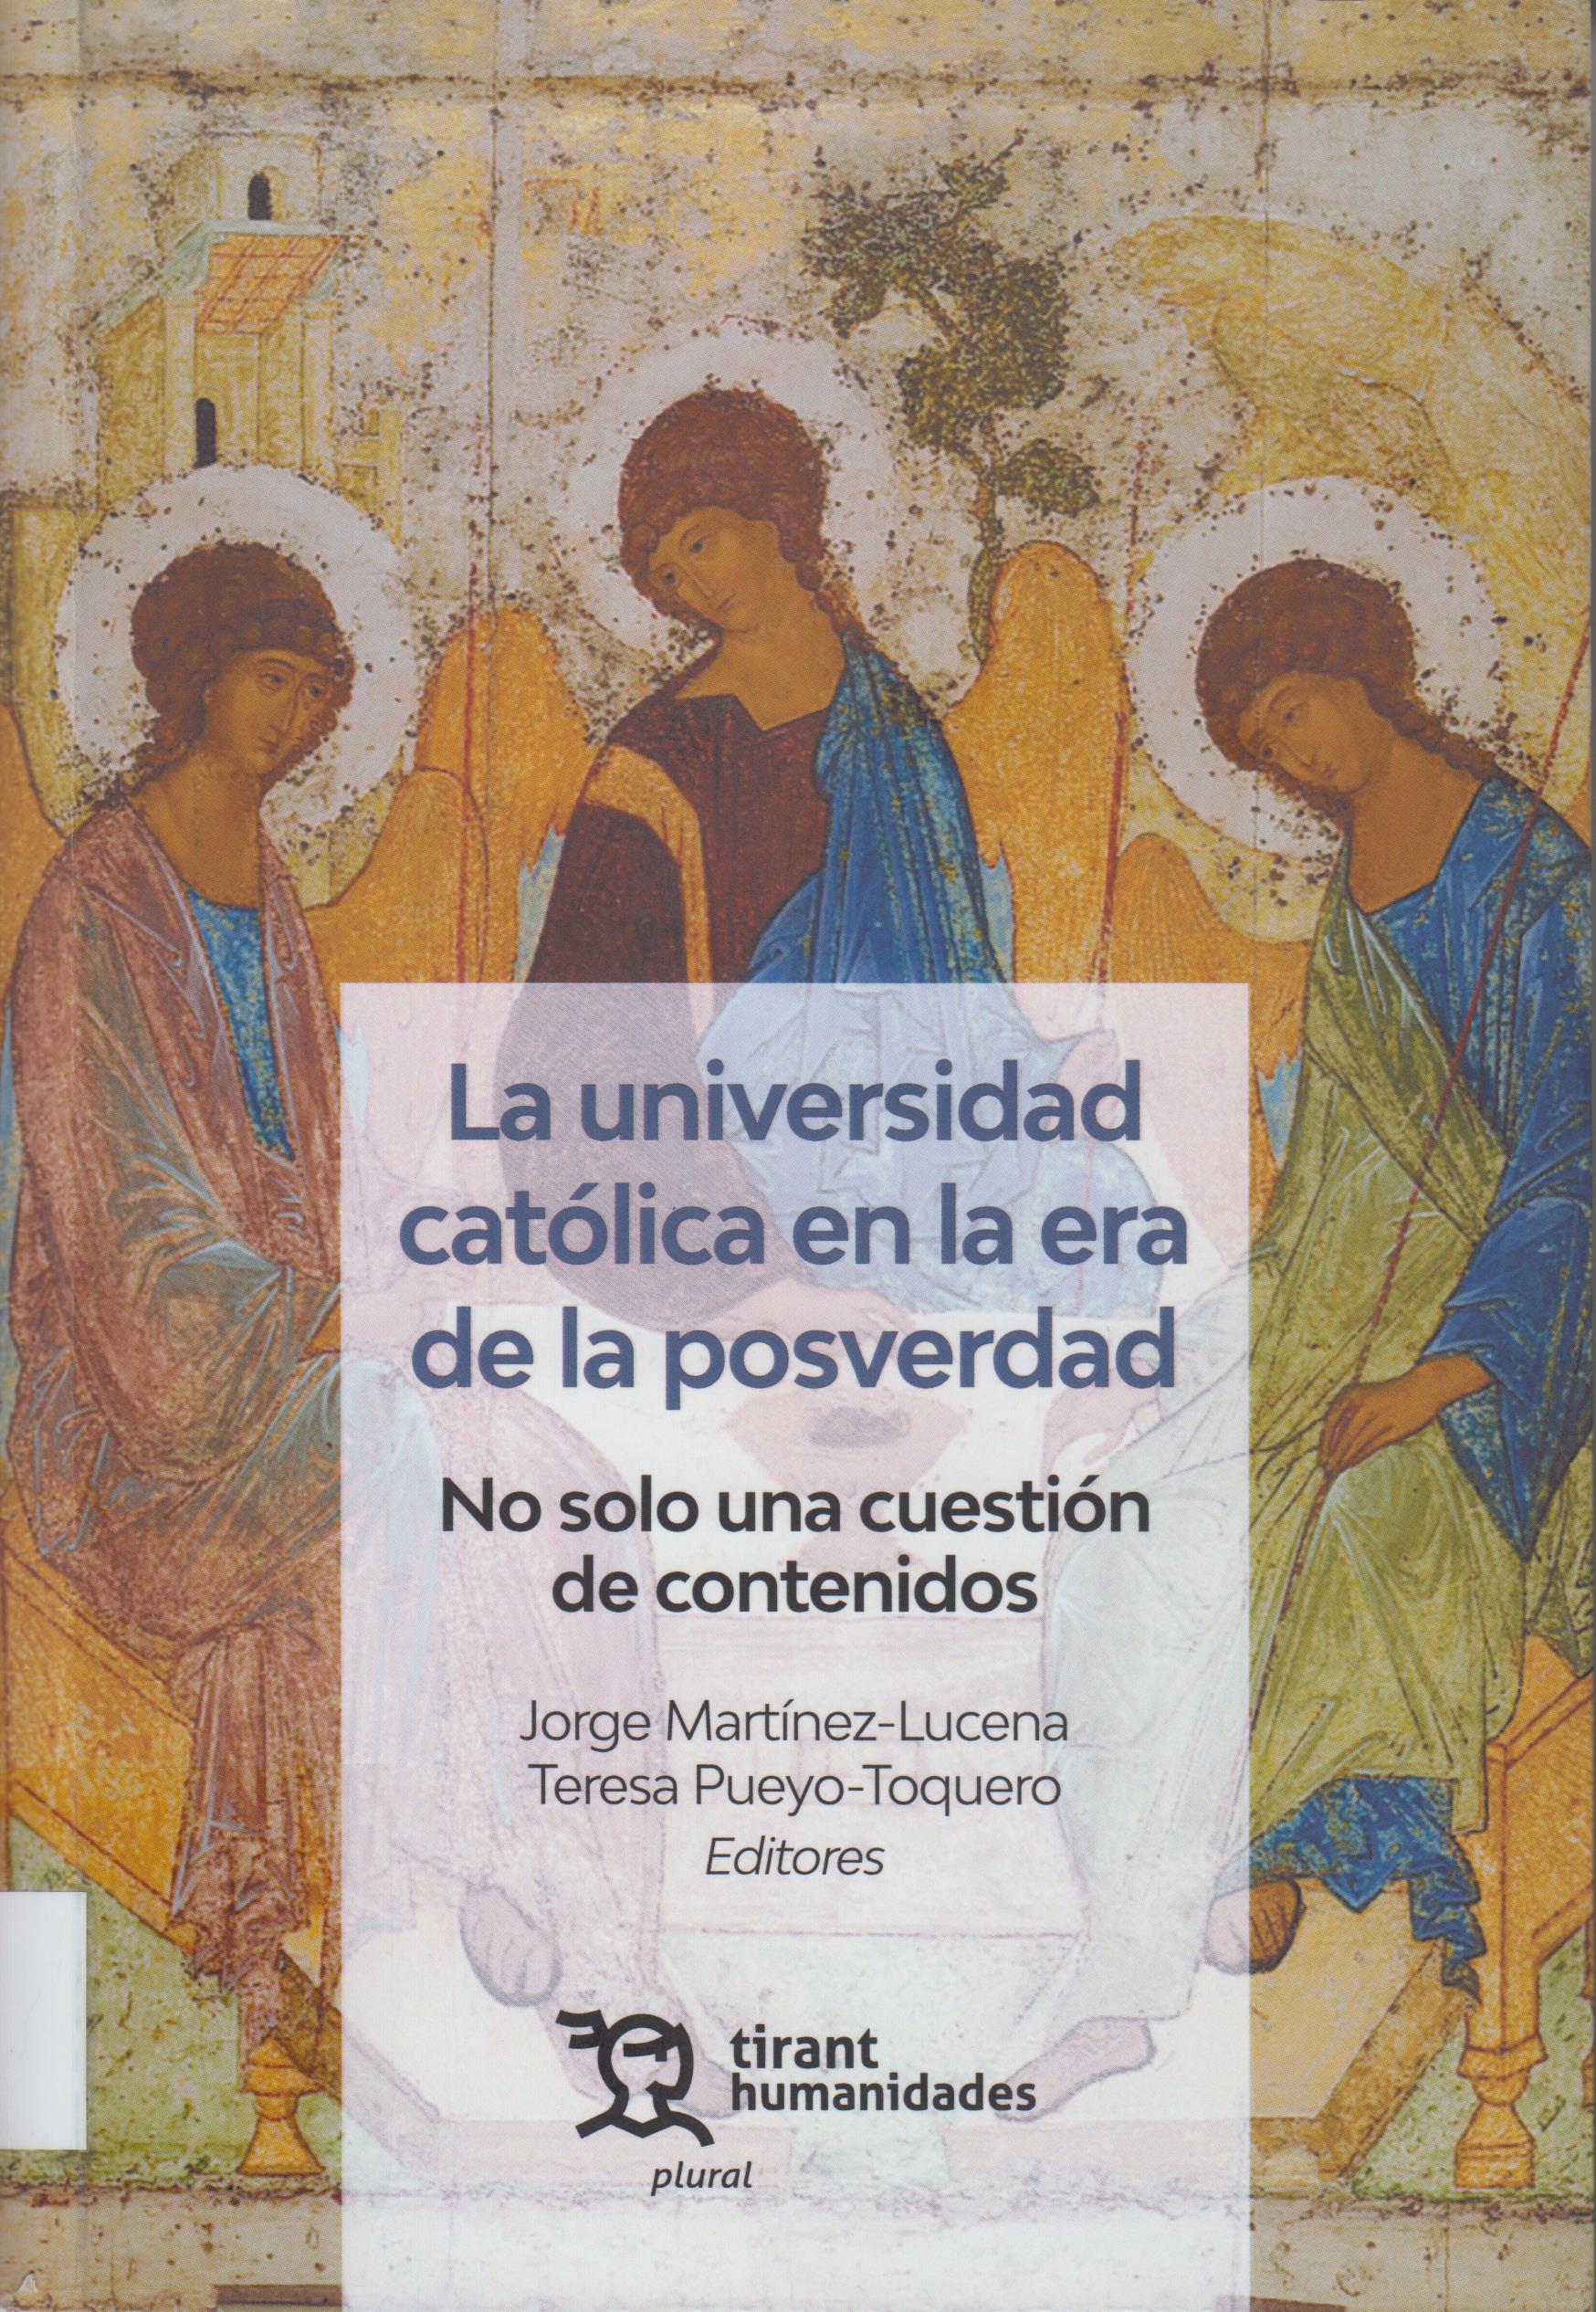 Imagen de portada del libro La universidad católica en la era de la posverdad.